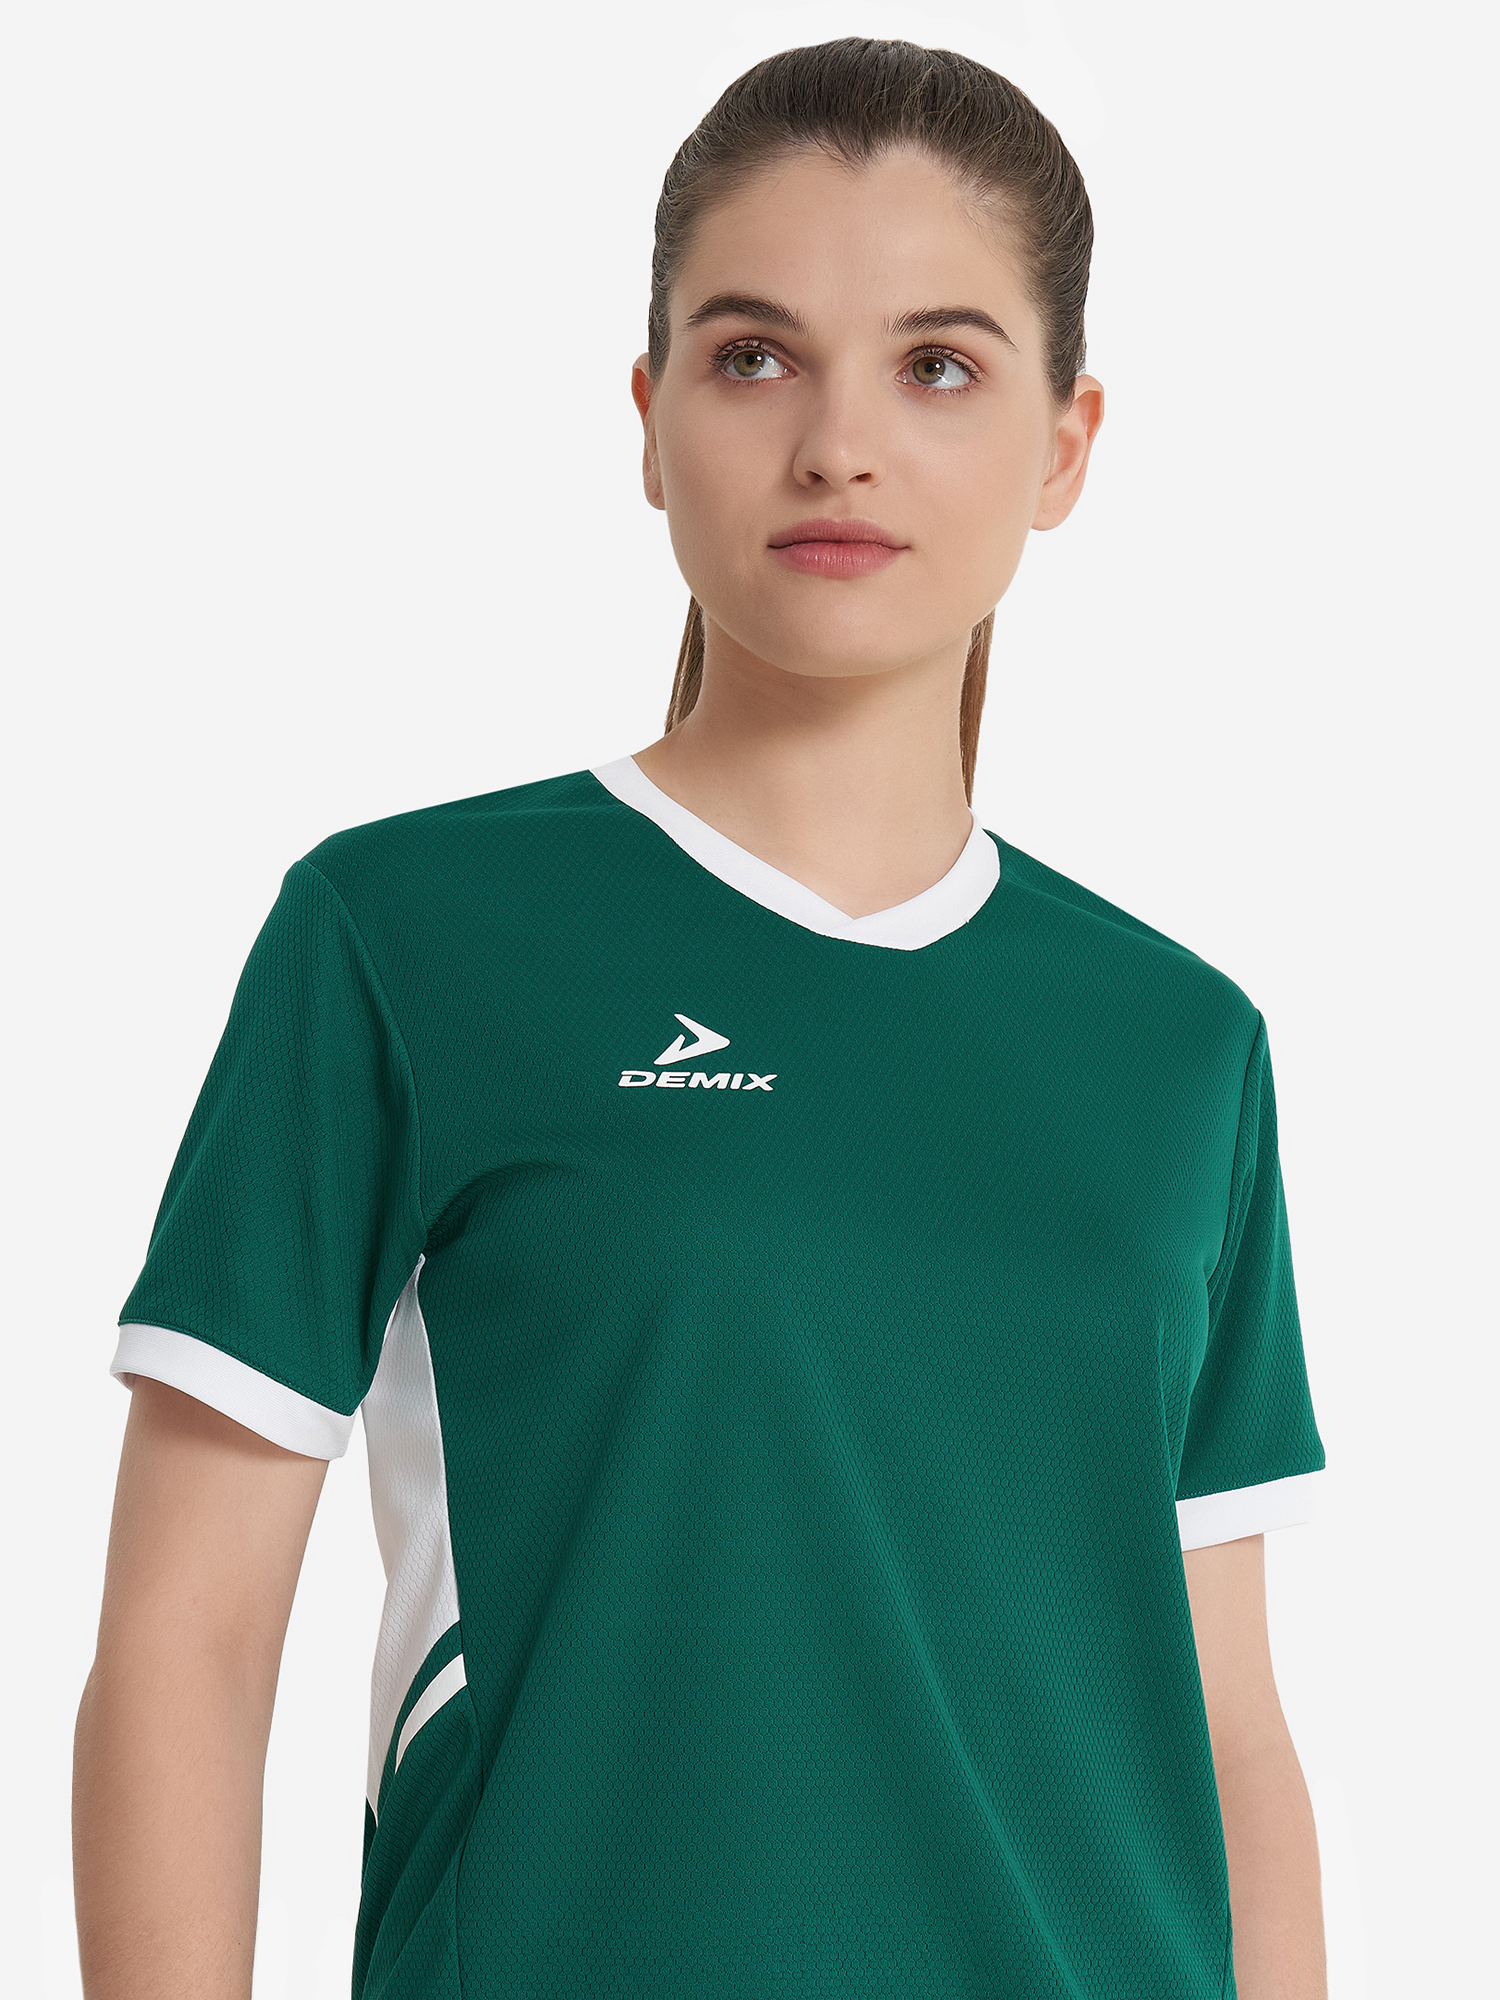 Футболка женская Demix Pace, Зеленый